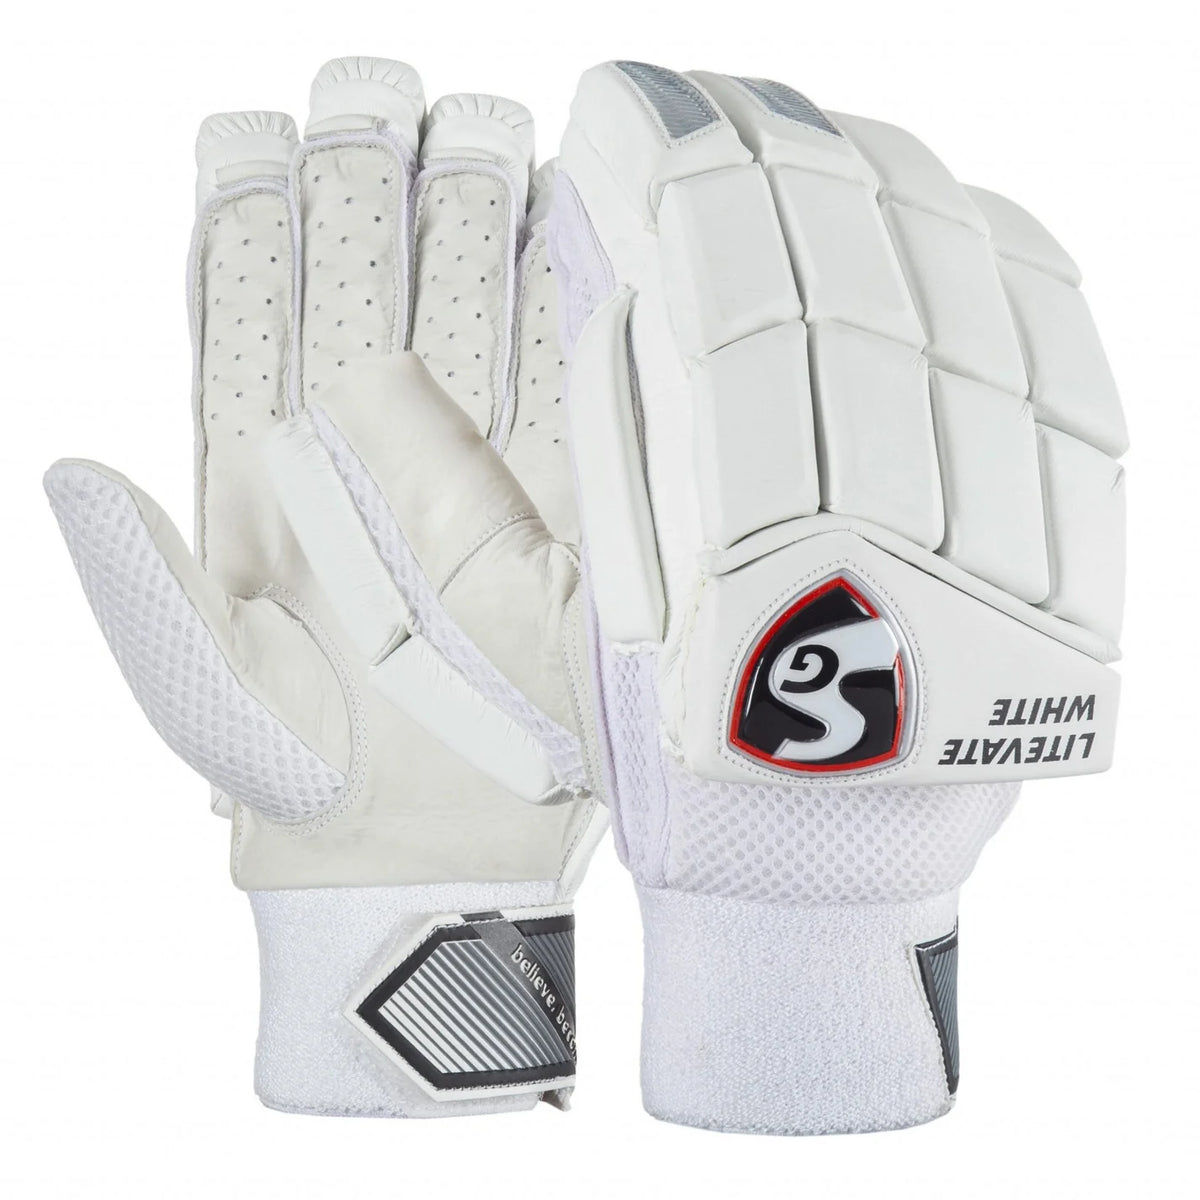 Pre-Order SG Litevate White Batting Gloves